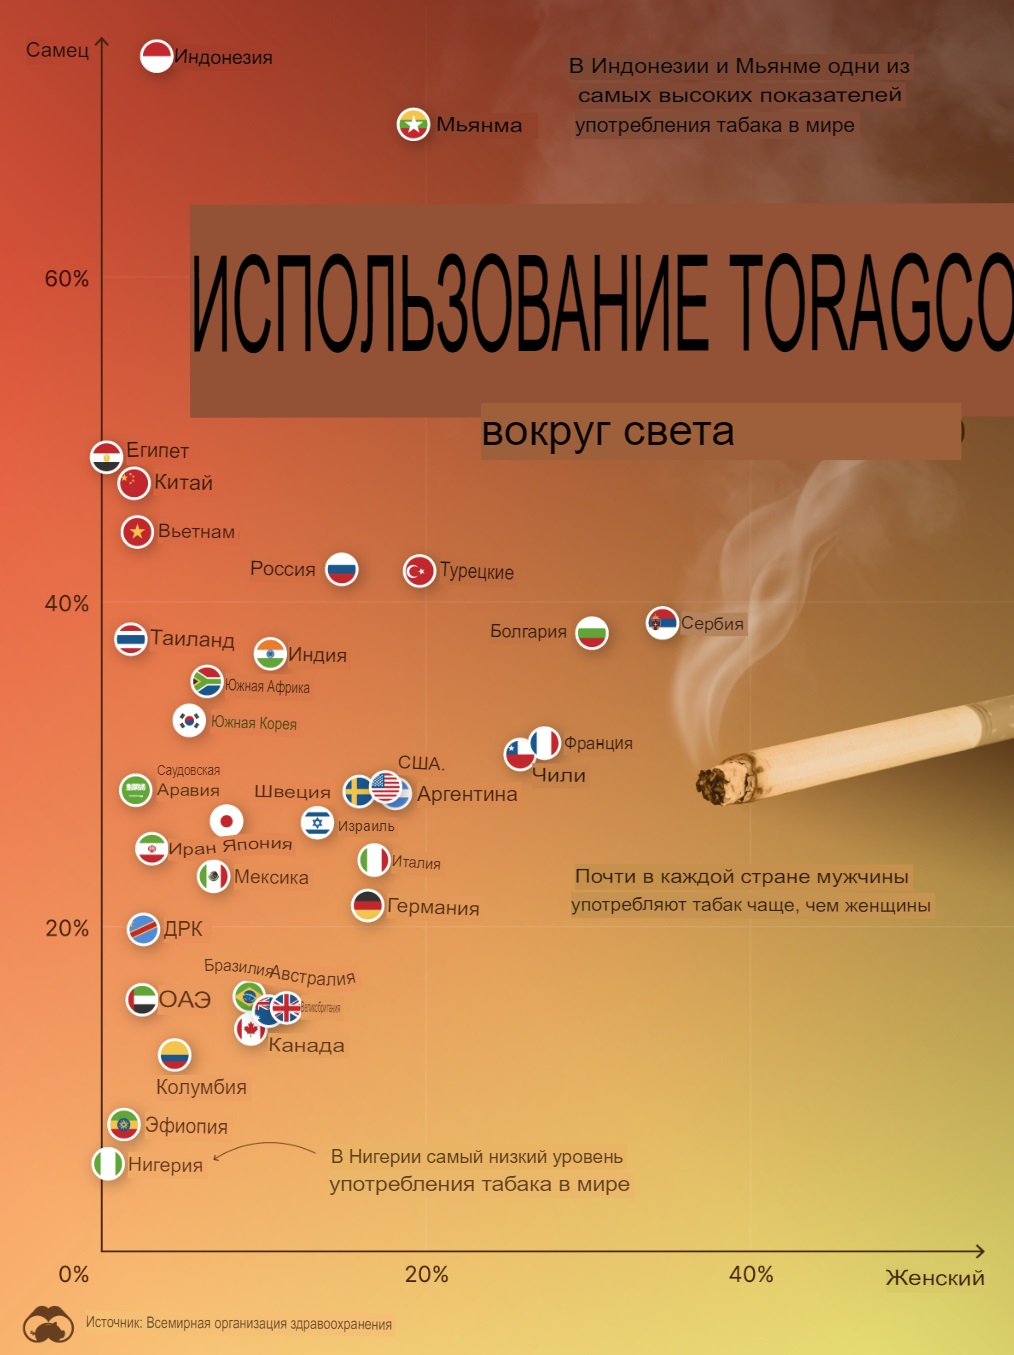 Диаграмма: Глобальное потребление табака с разбивкой по странам и полу